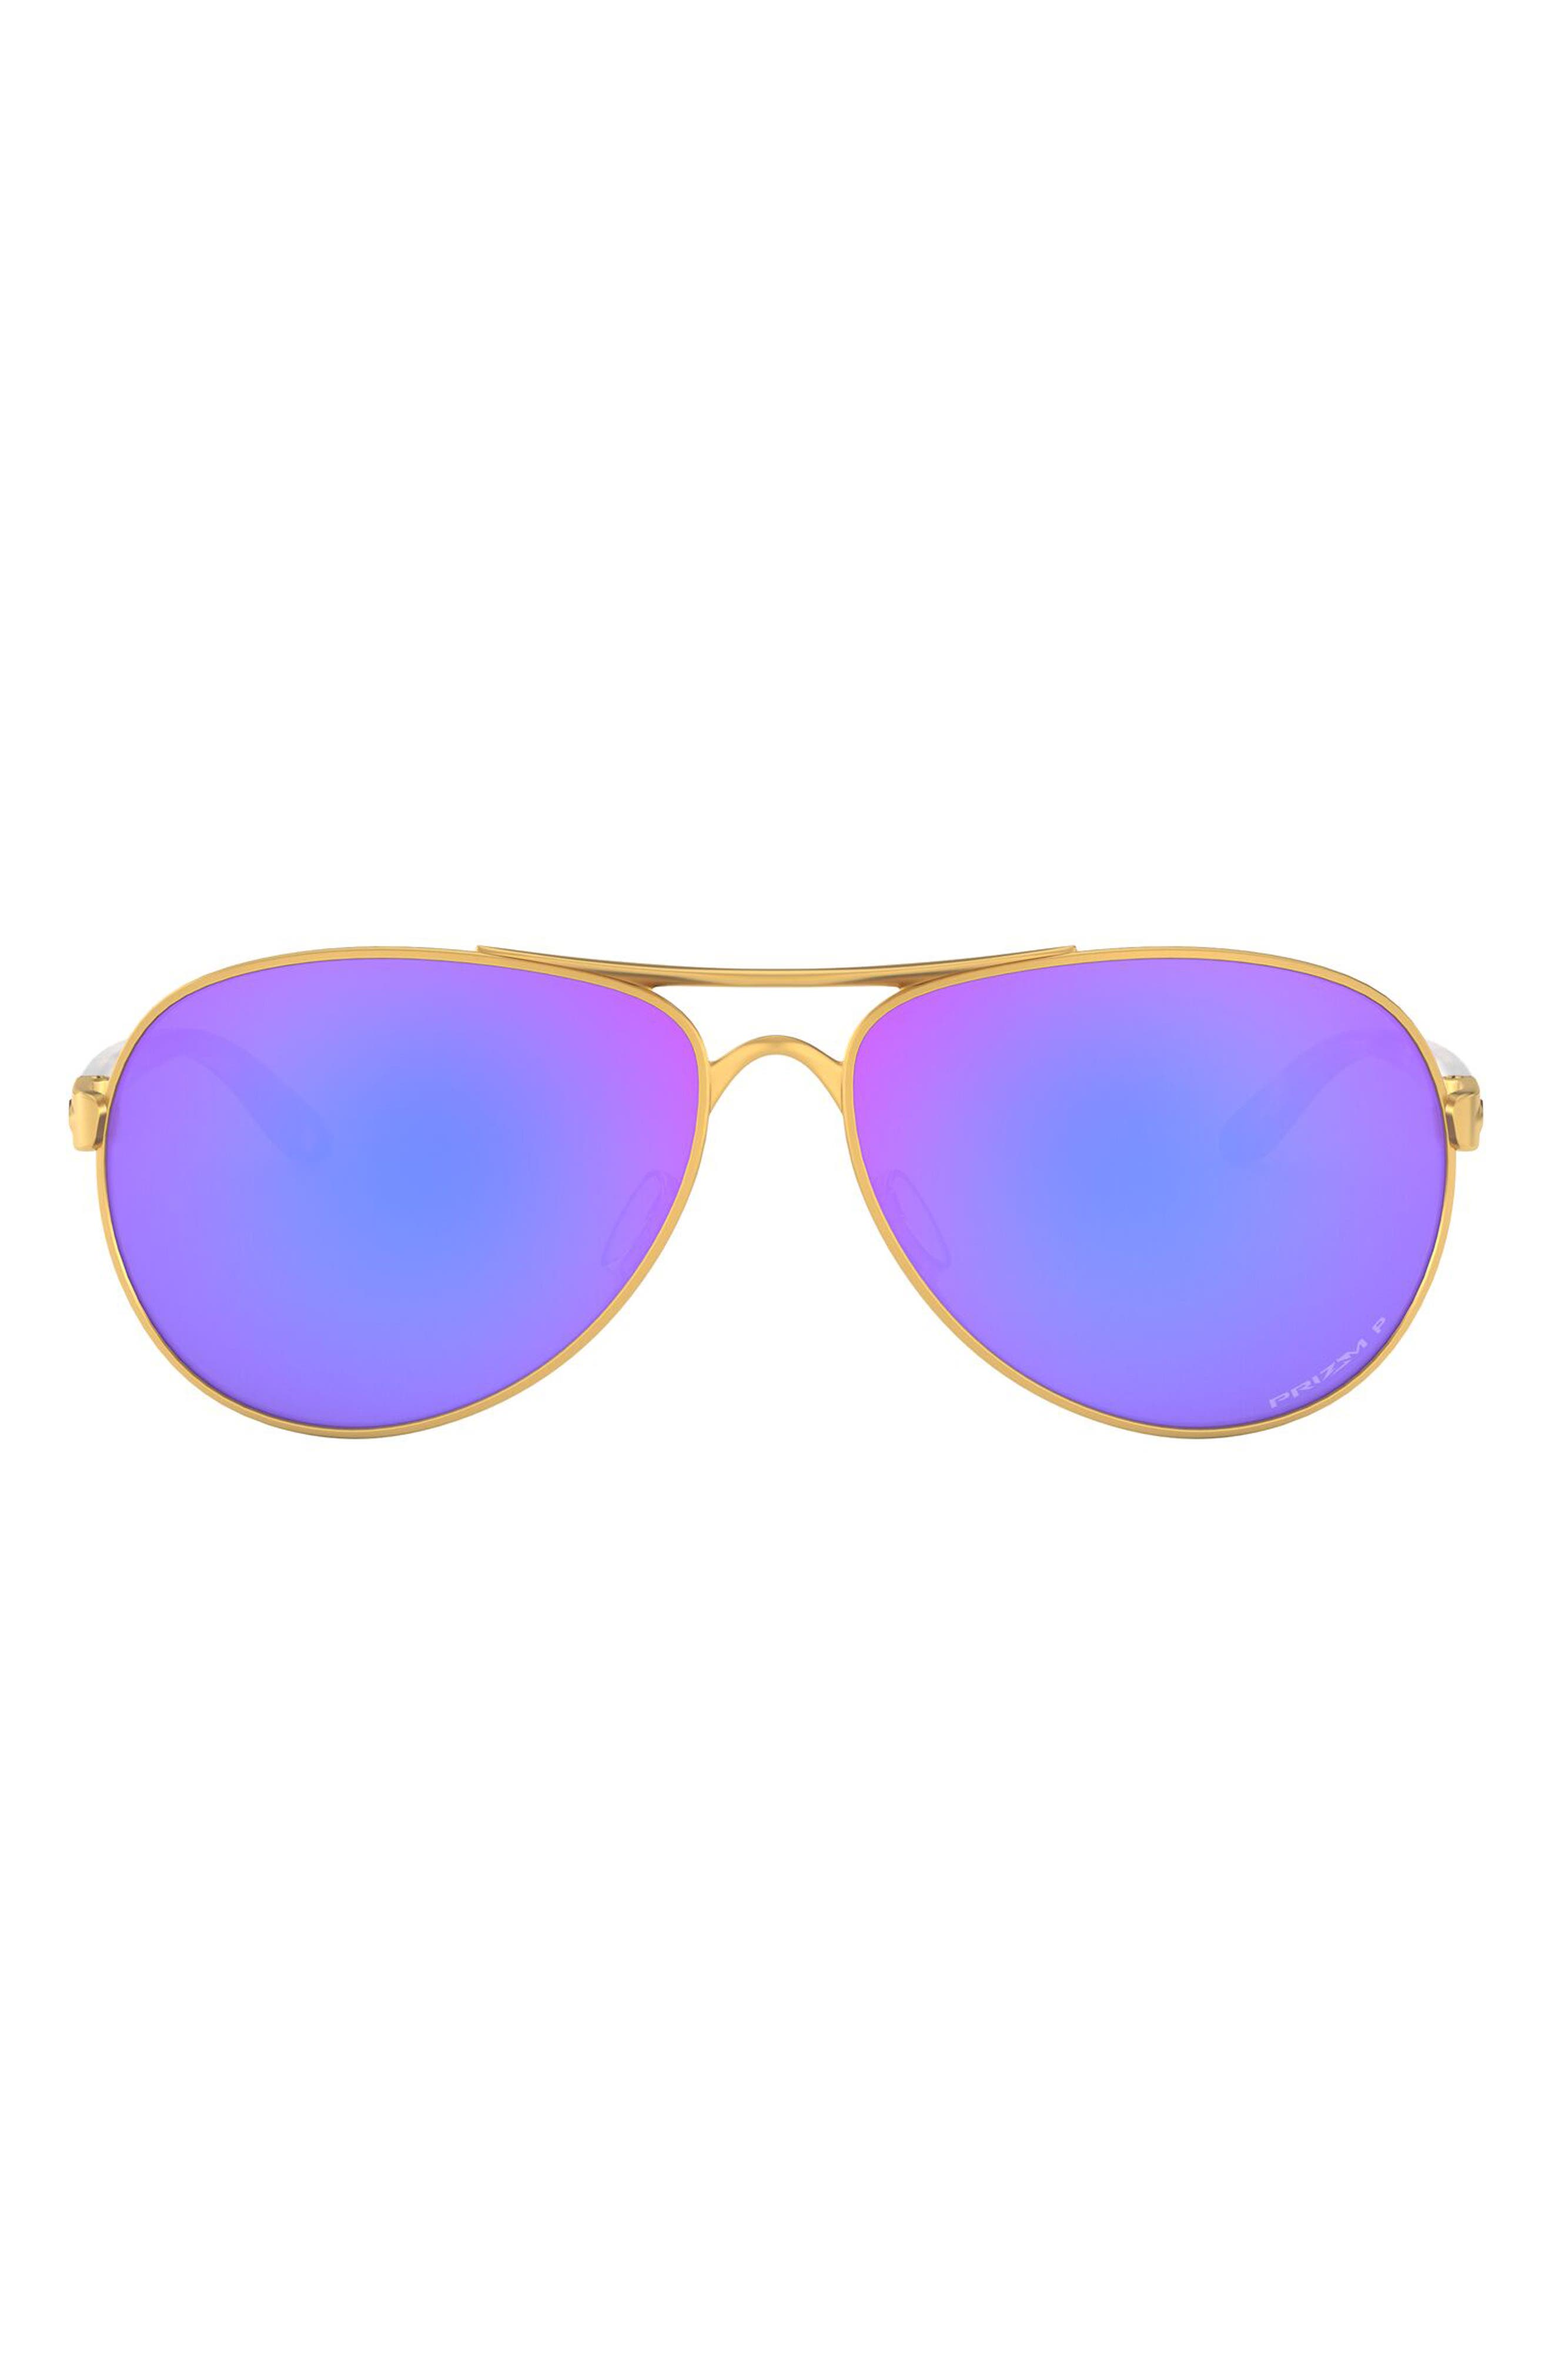 oakley sunglasses aviator polarized